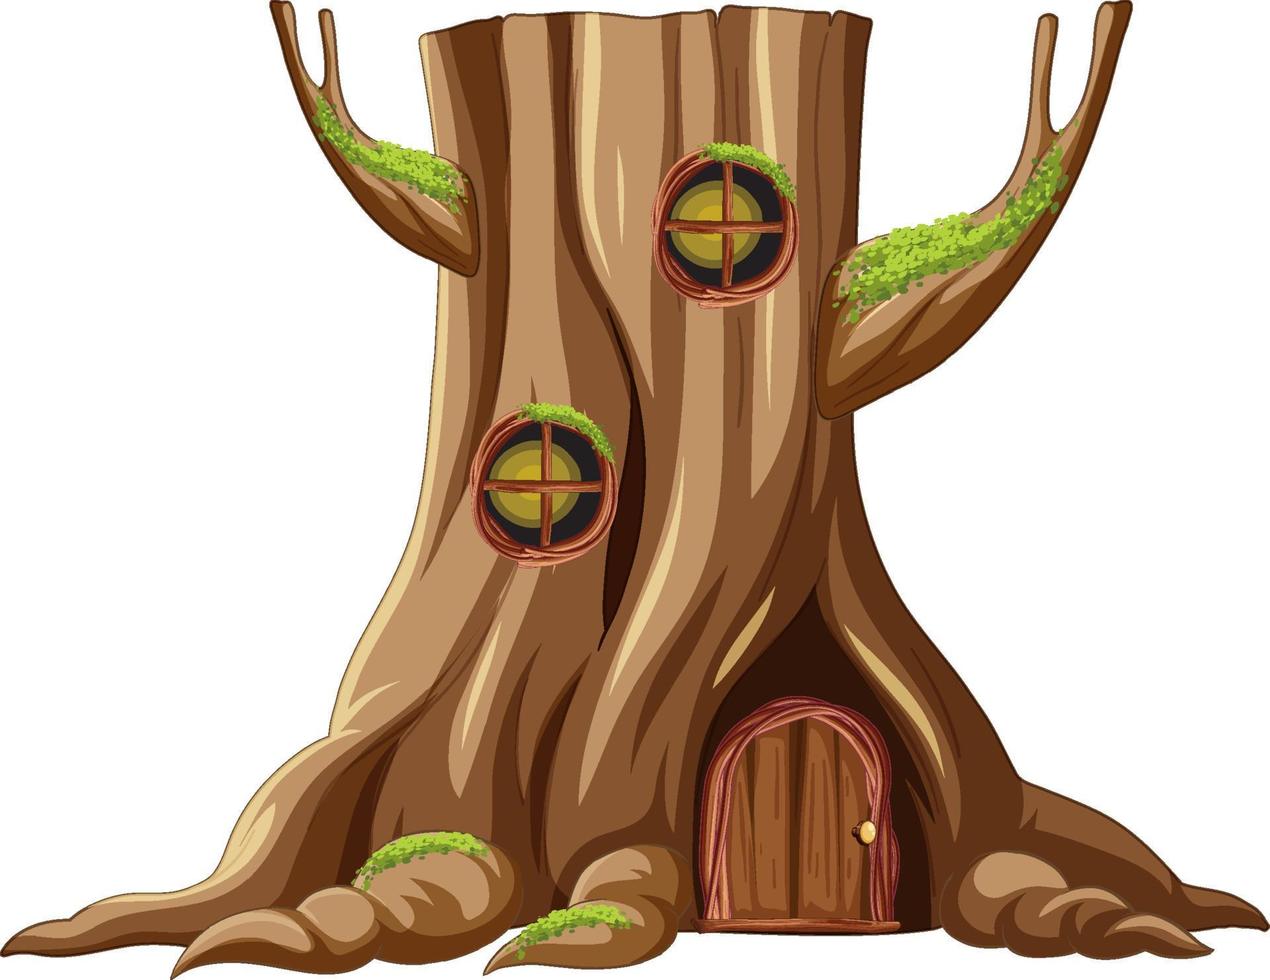 casa da árvore dentro do tronco da árvore vetor